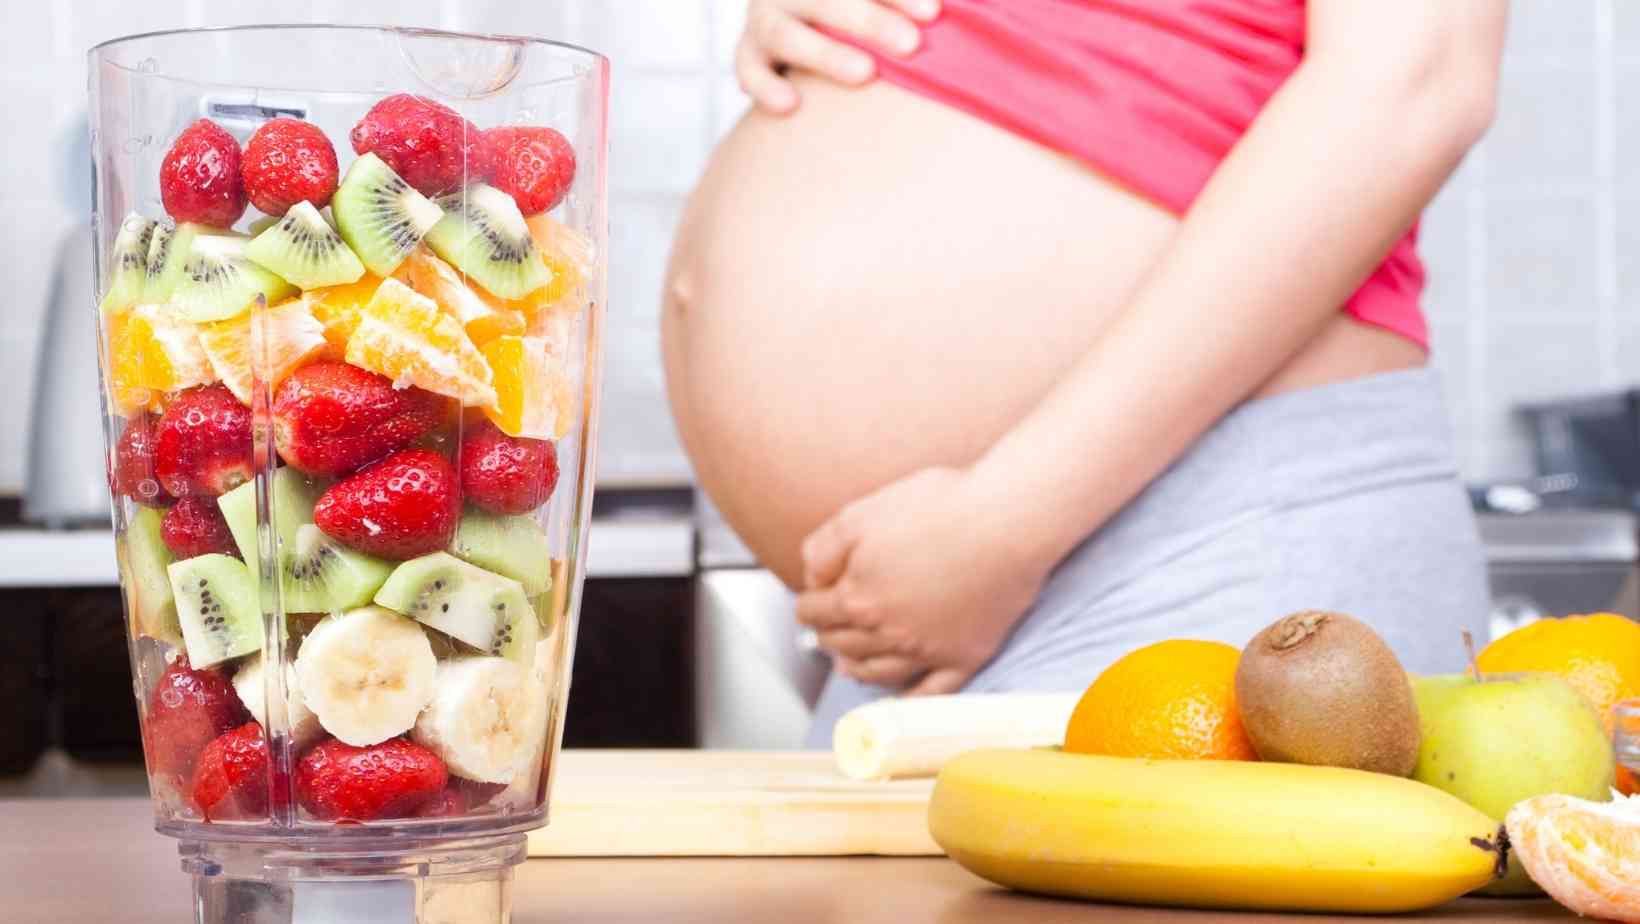 Pregnant Women's Fibre-Rich Food Options